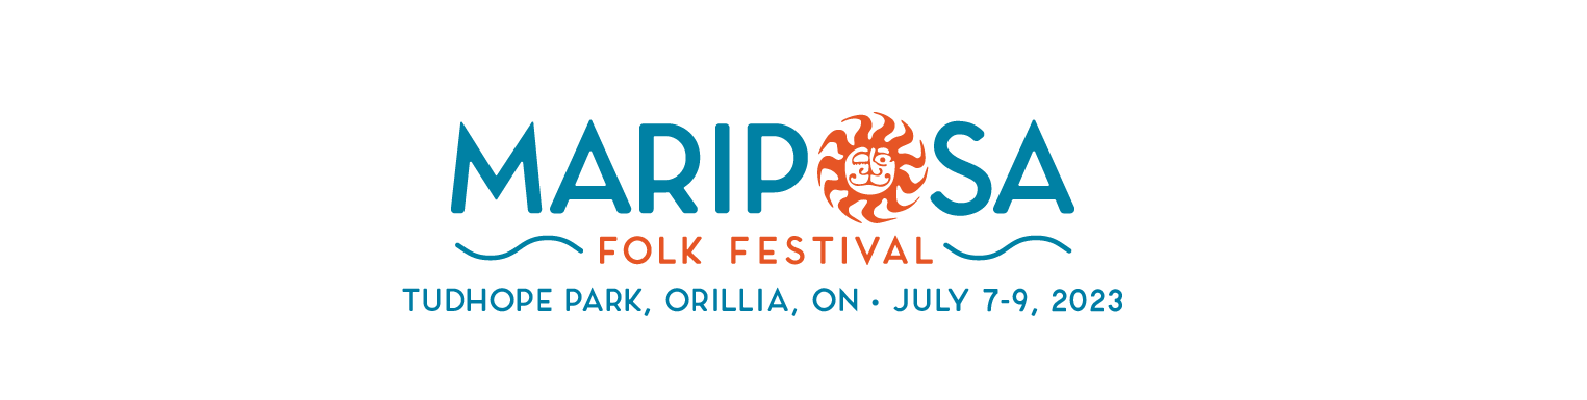 2023 Mariposa Folk Festival